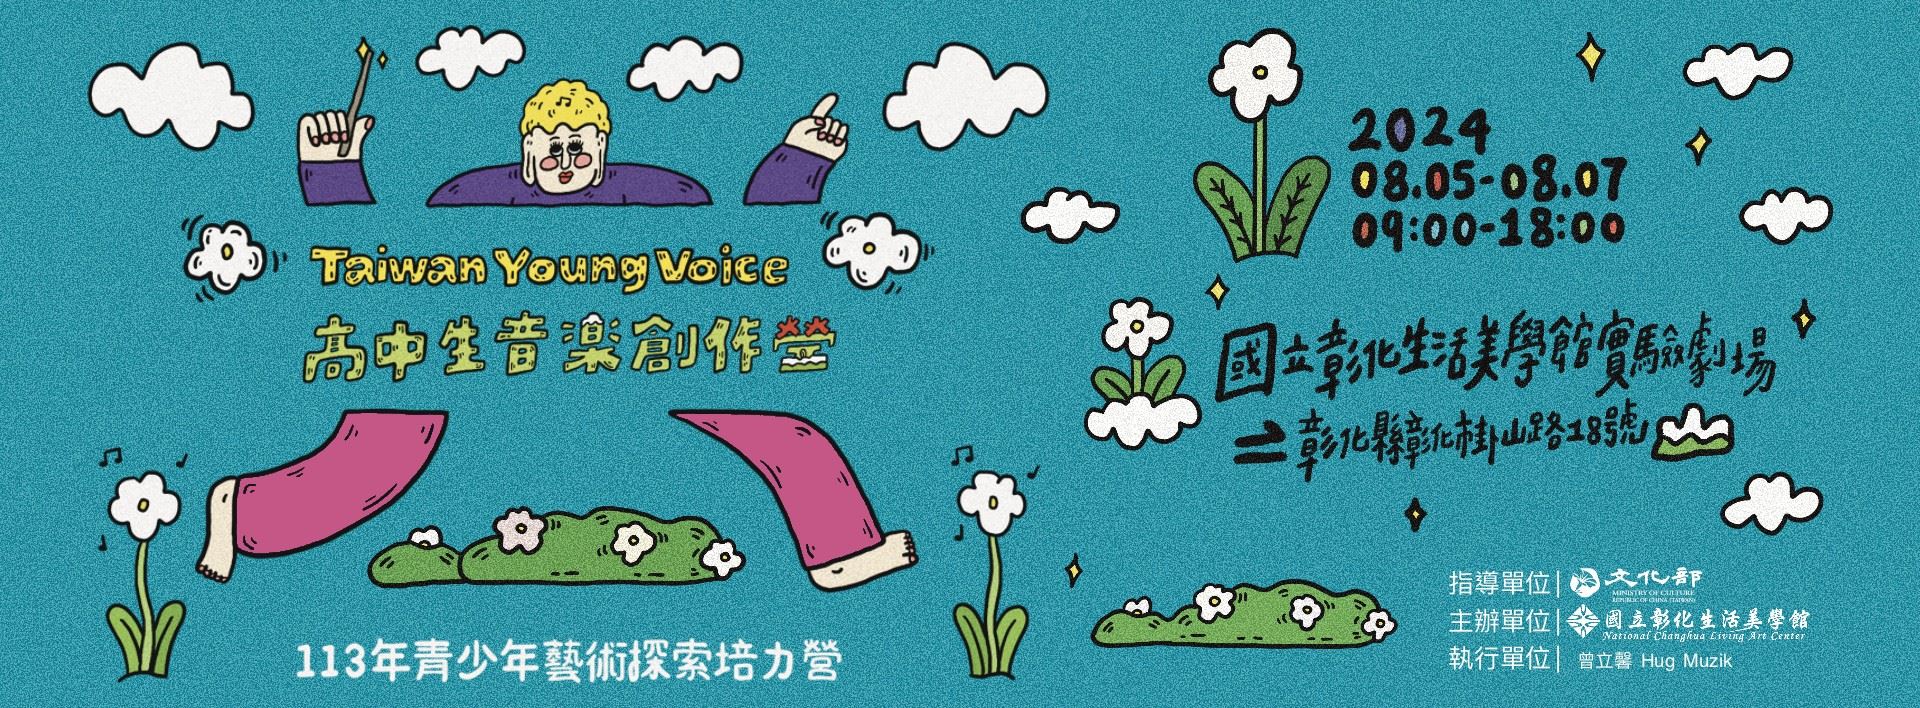 【113年青少年藝術探索培力營─音樂創作】Taiwan Young Voice 音樂創作營